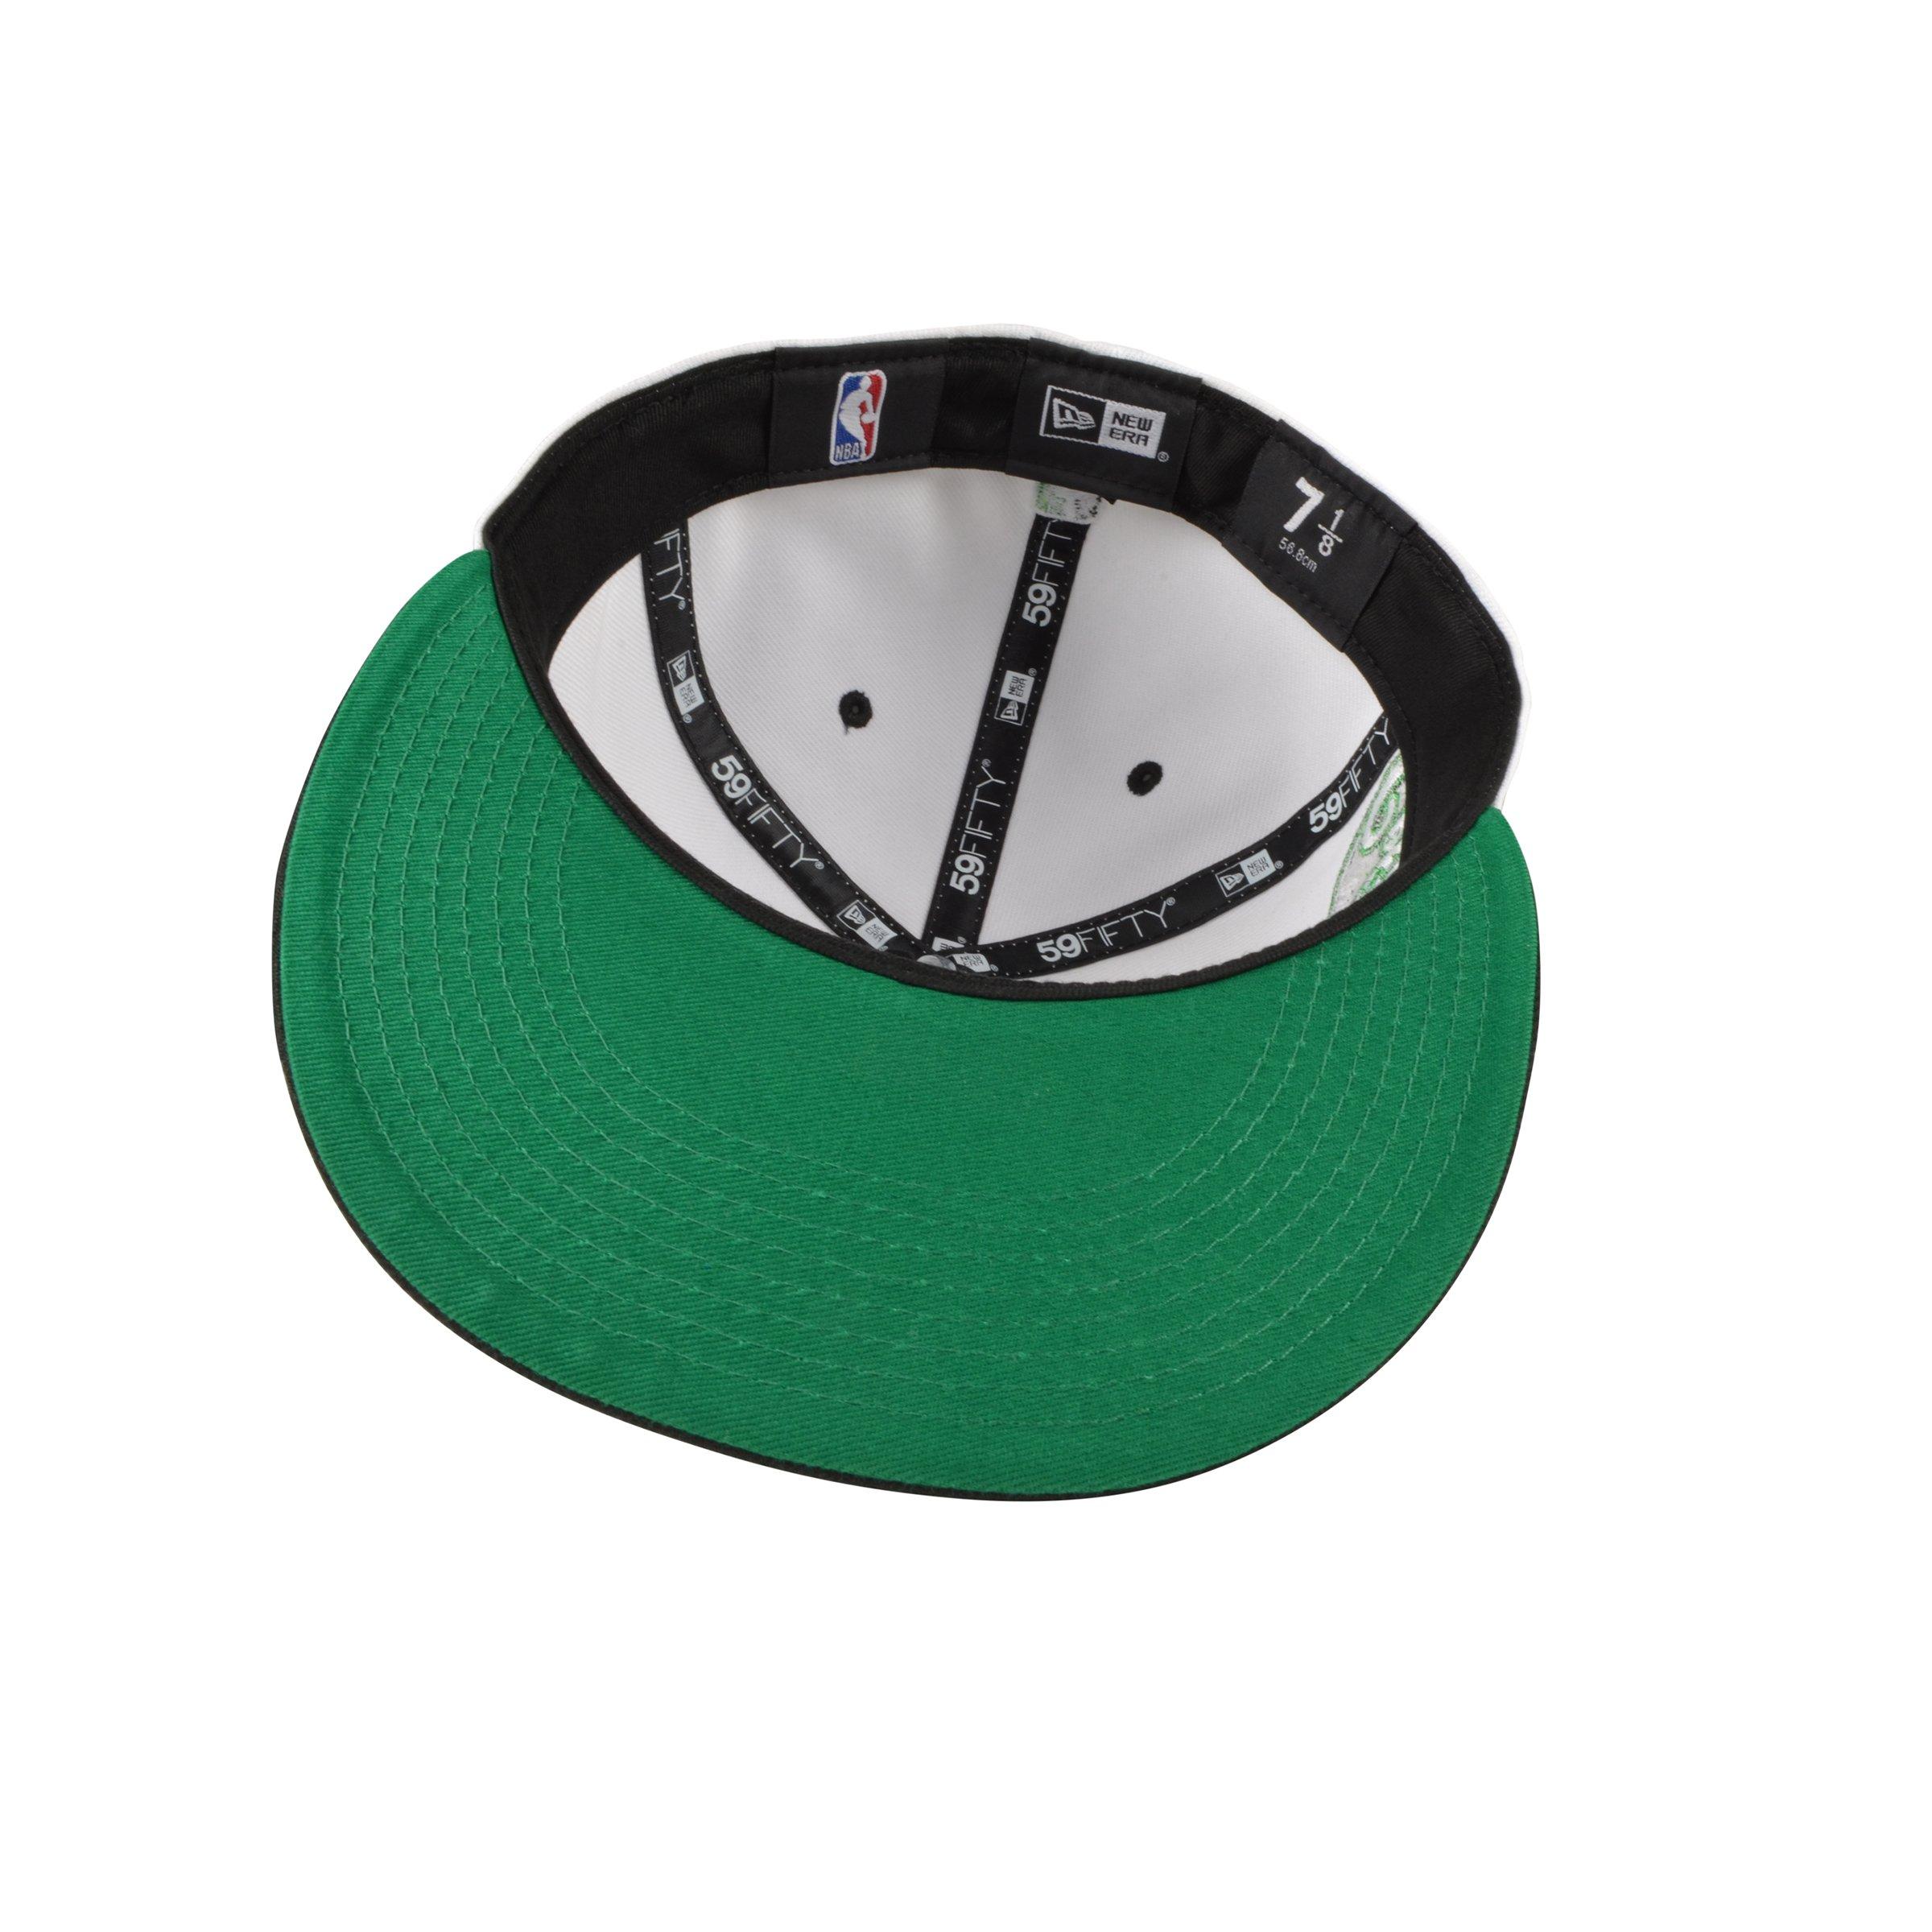 New Era NBA Essential 59Fifty Boston Celtics Cap (green/black)